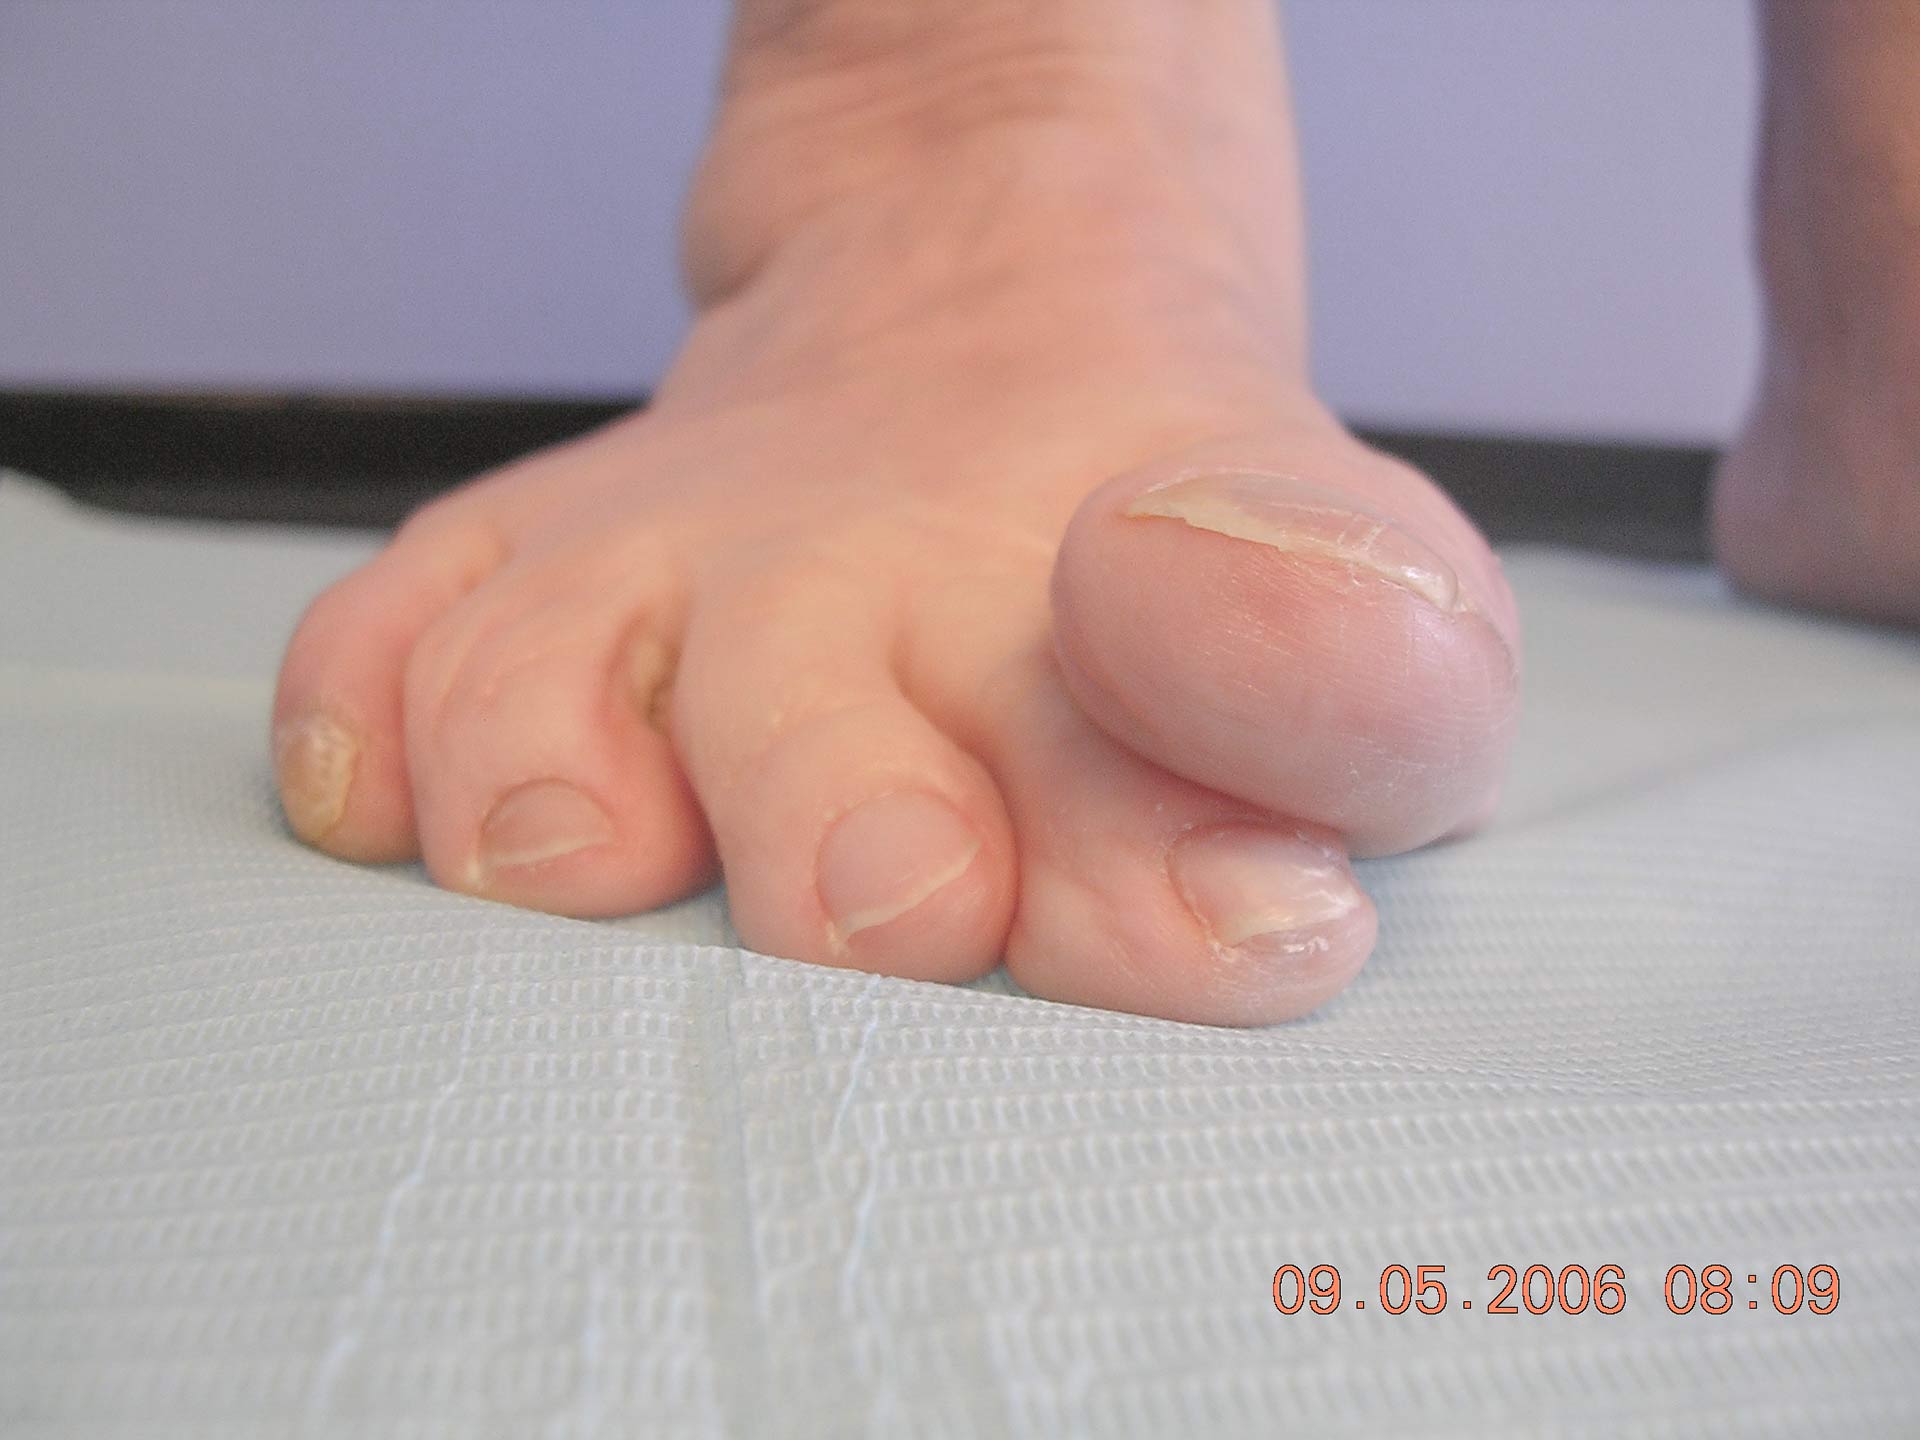 Maestro y Alejo Podología | Tratamiento quirúrgico de juanete con dedo por encima de segundo dedo (primer dedo supracutus) | Preoperatorio 1